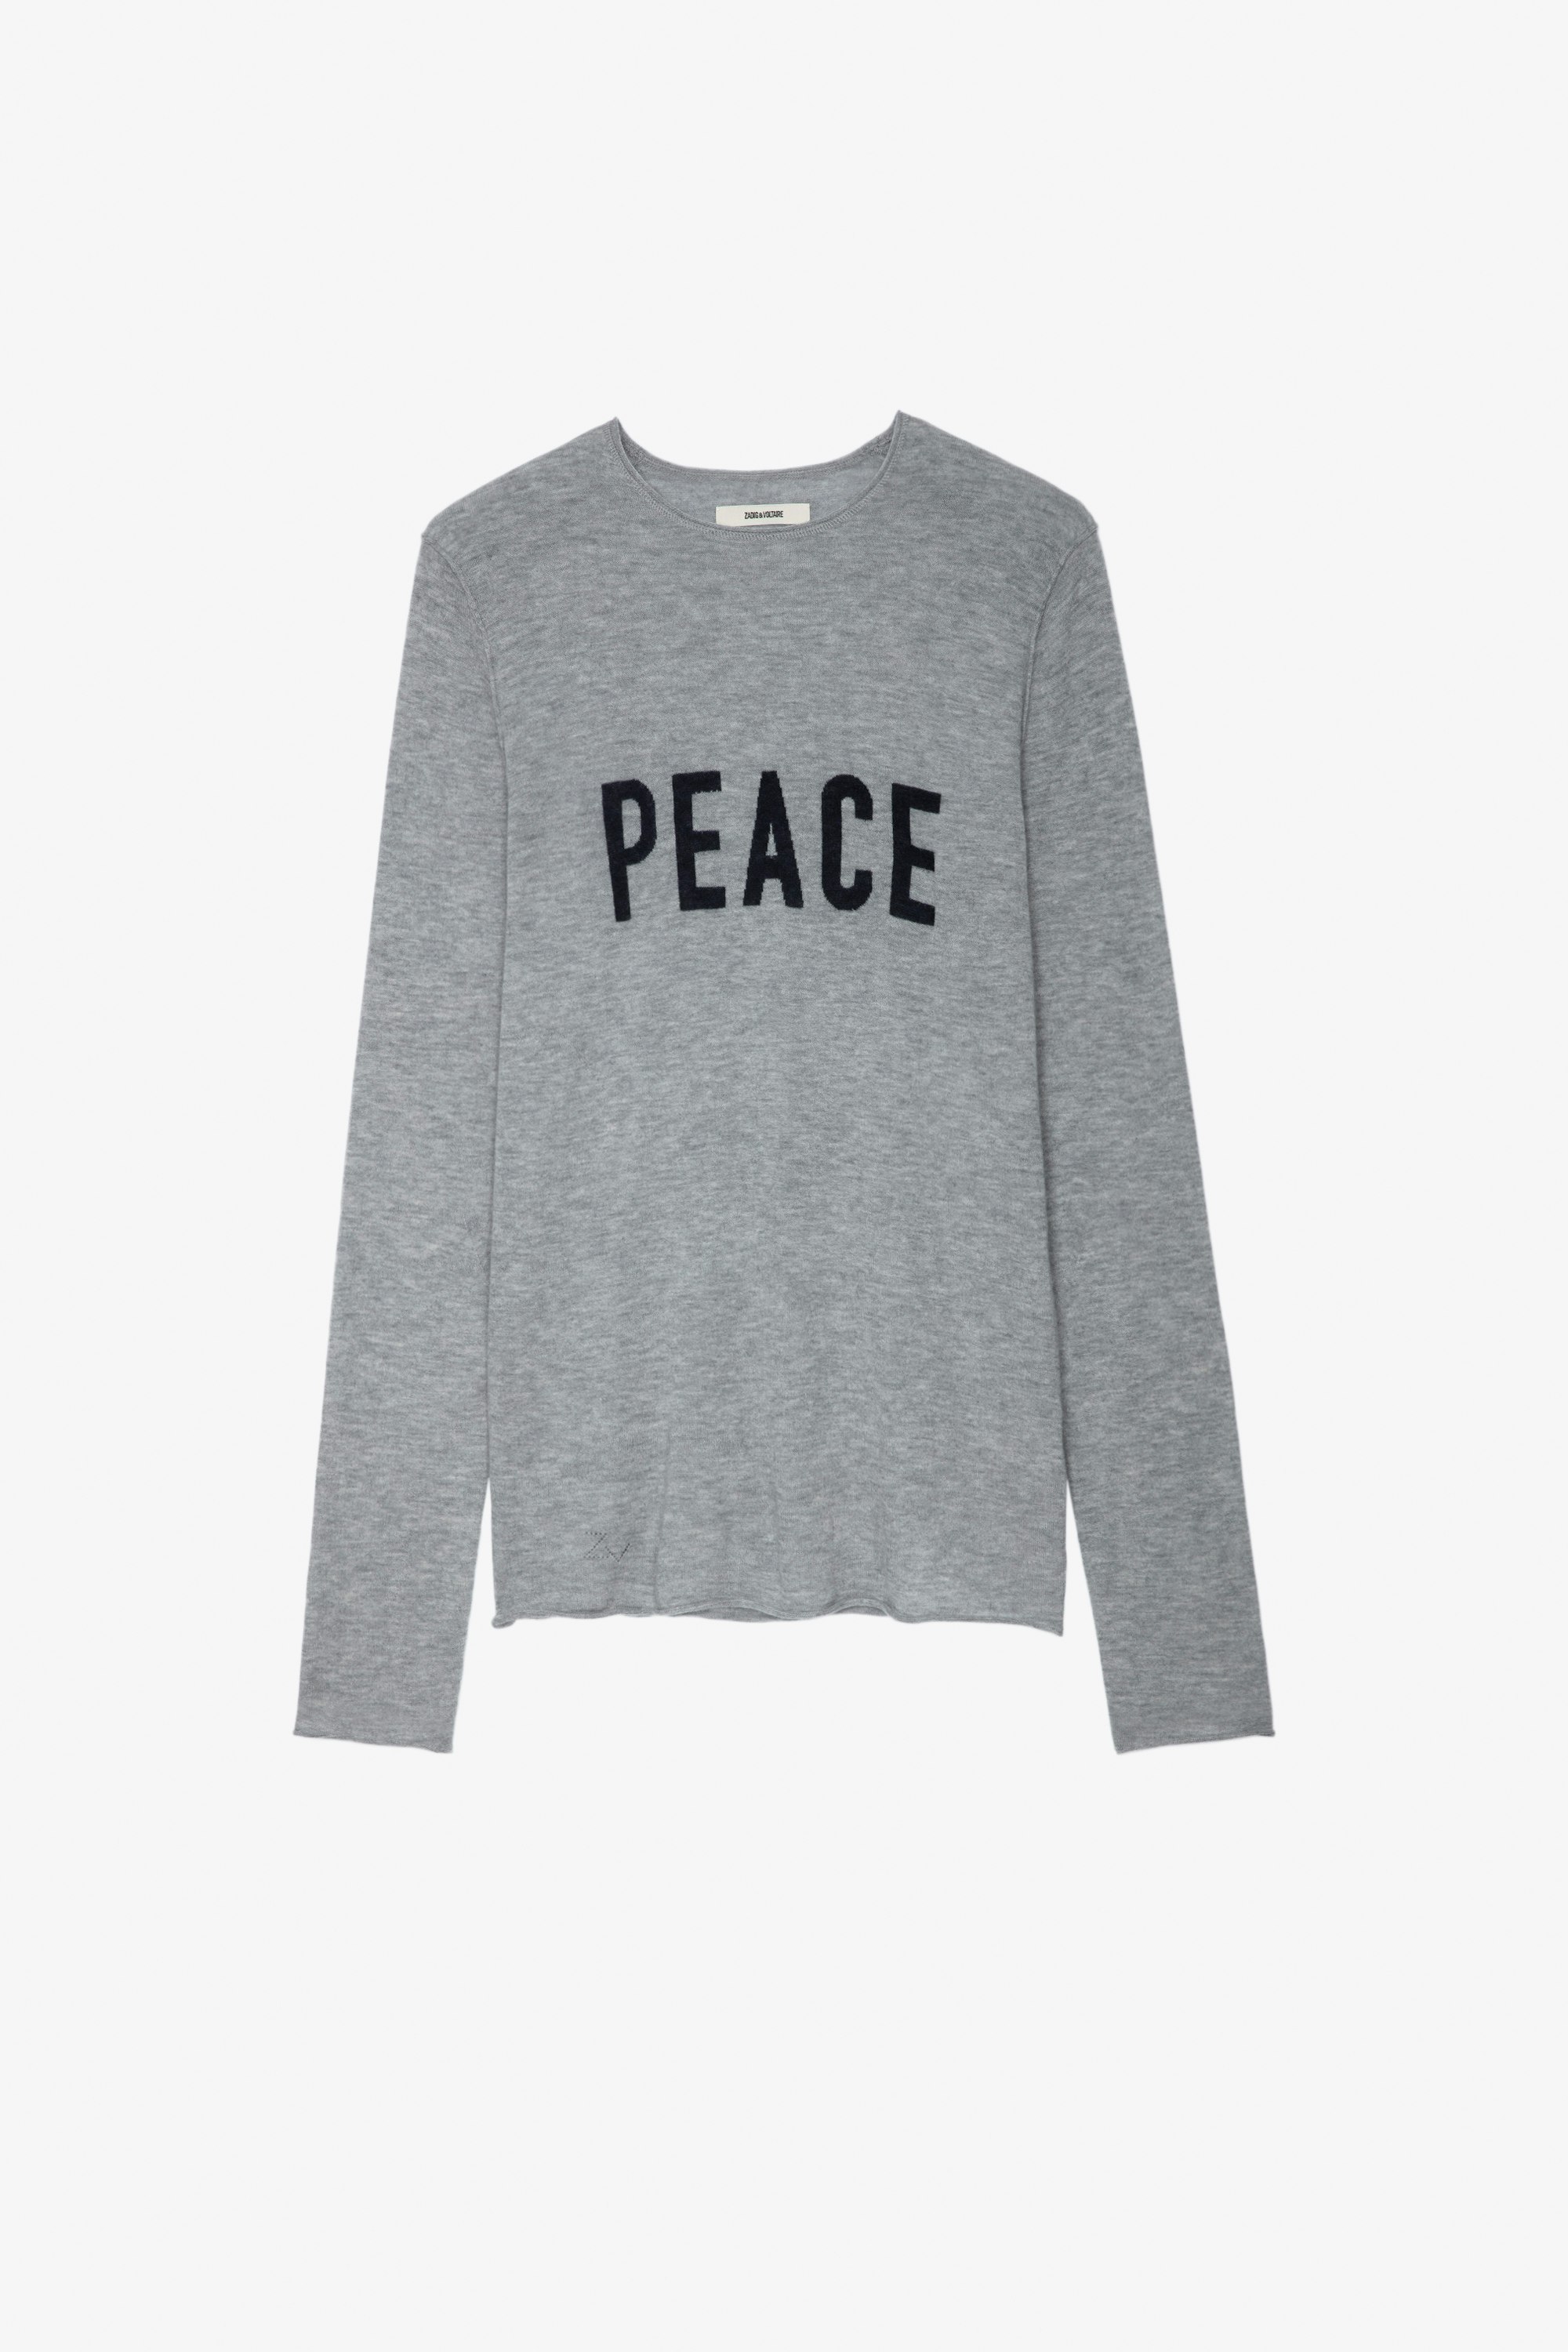 Teiss Pullover グレー カシミヤ ラウンドネック、長袖、"Peace"メッセージ入り セーター メンズ